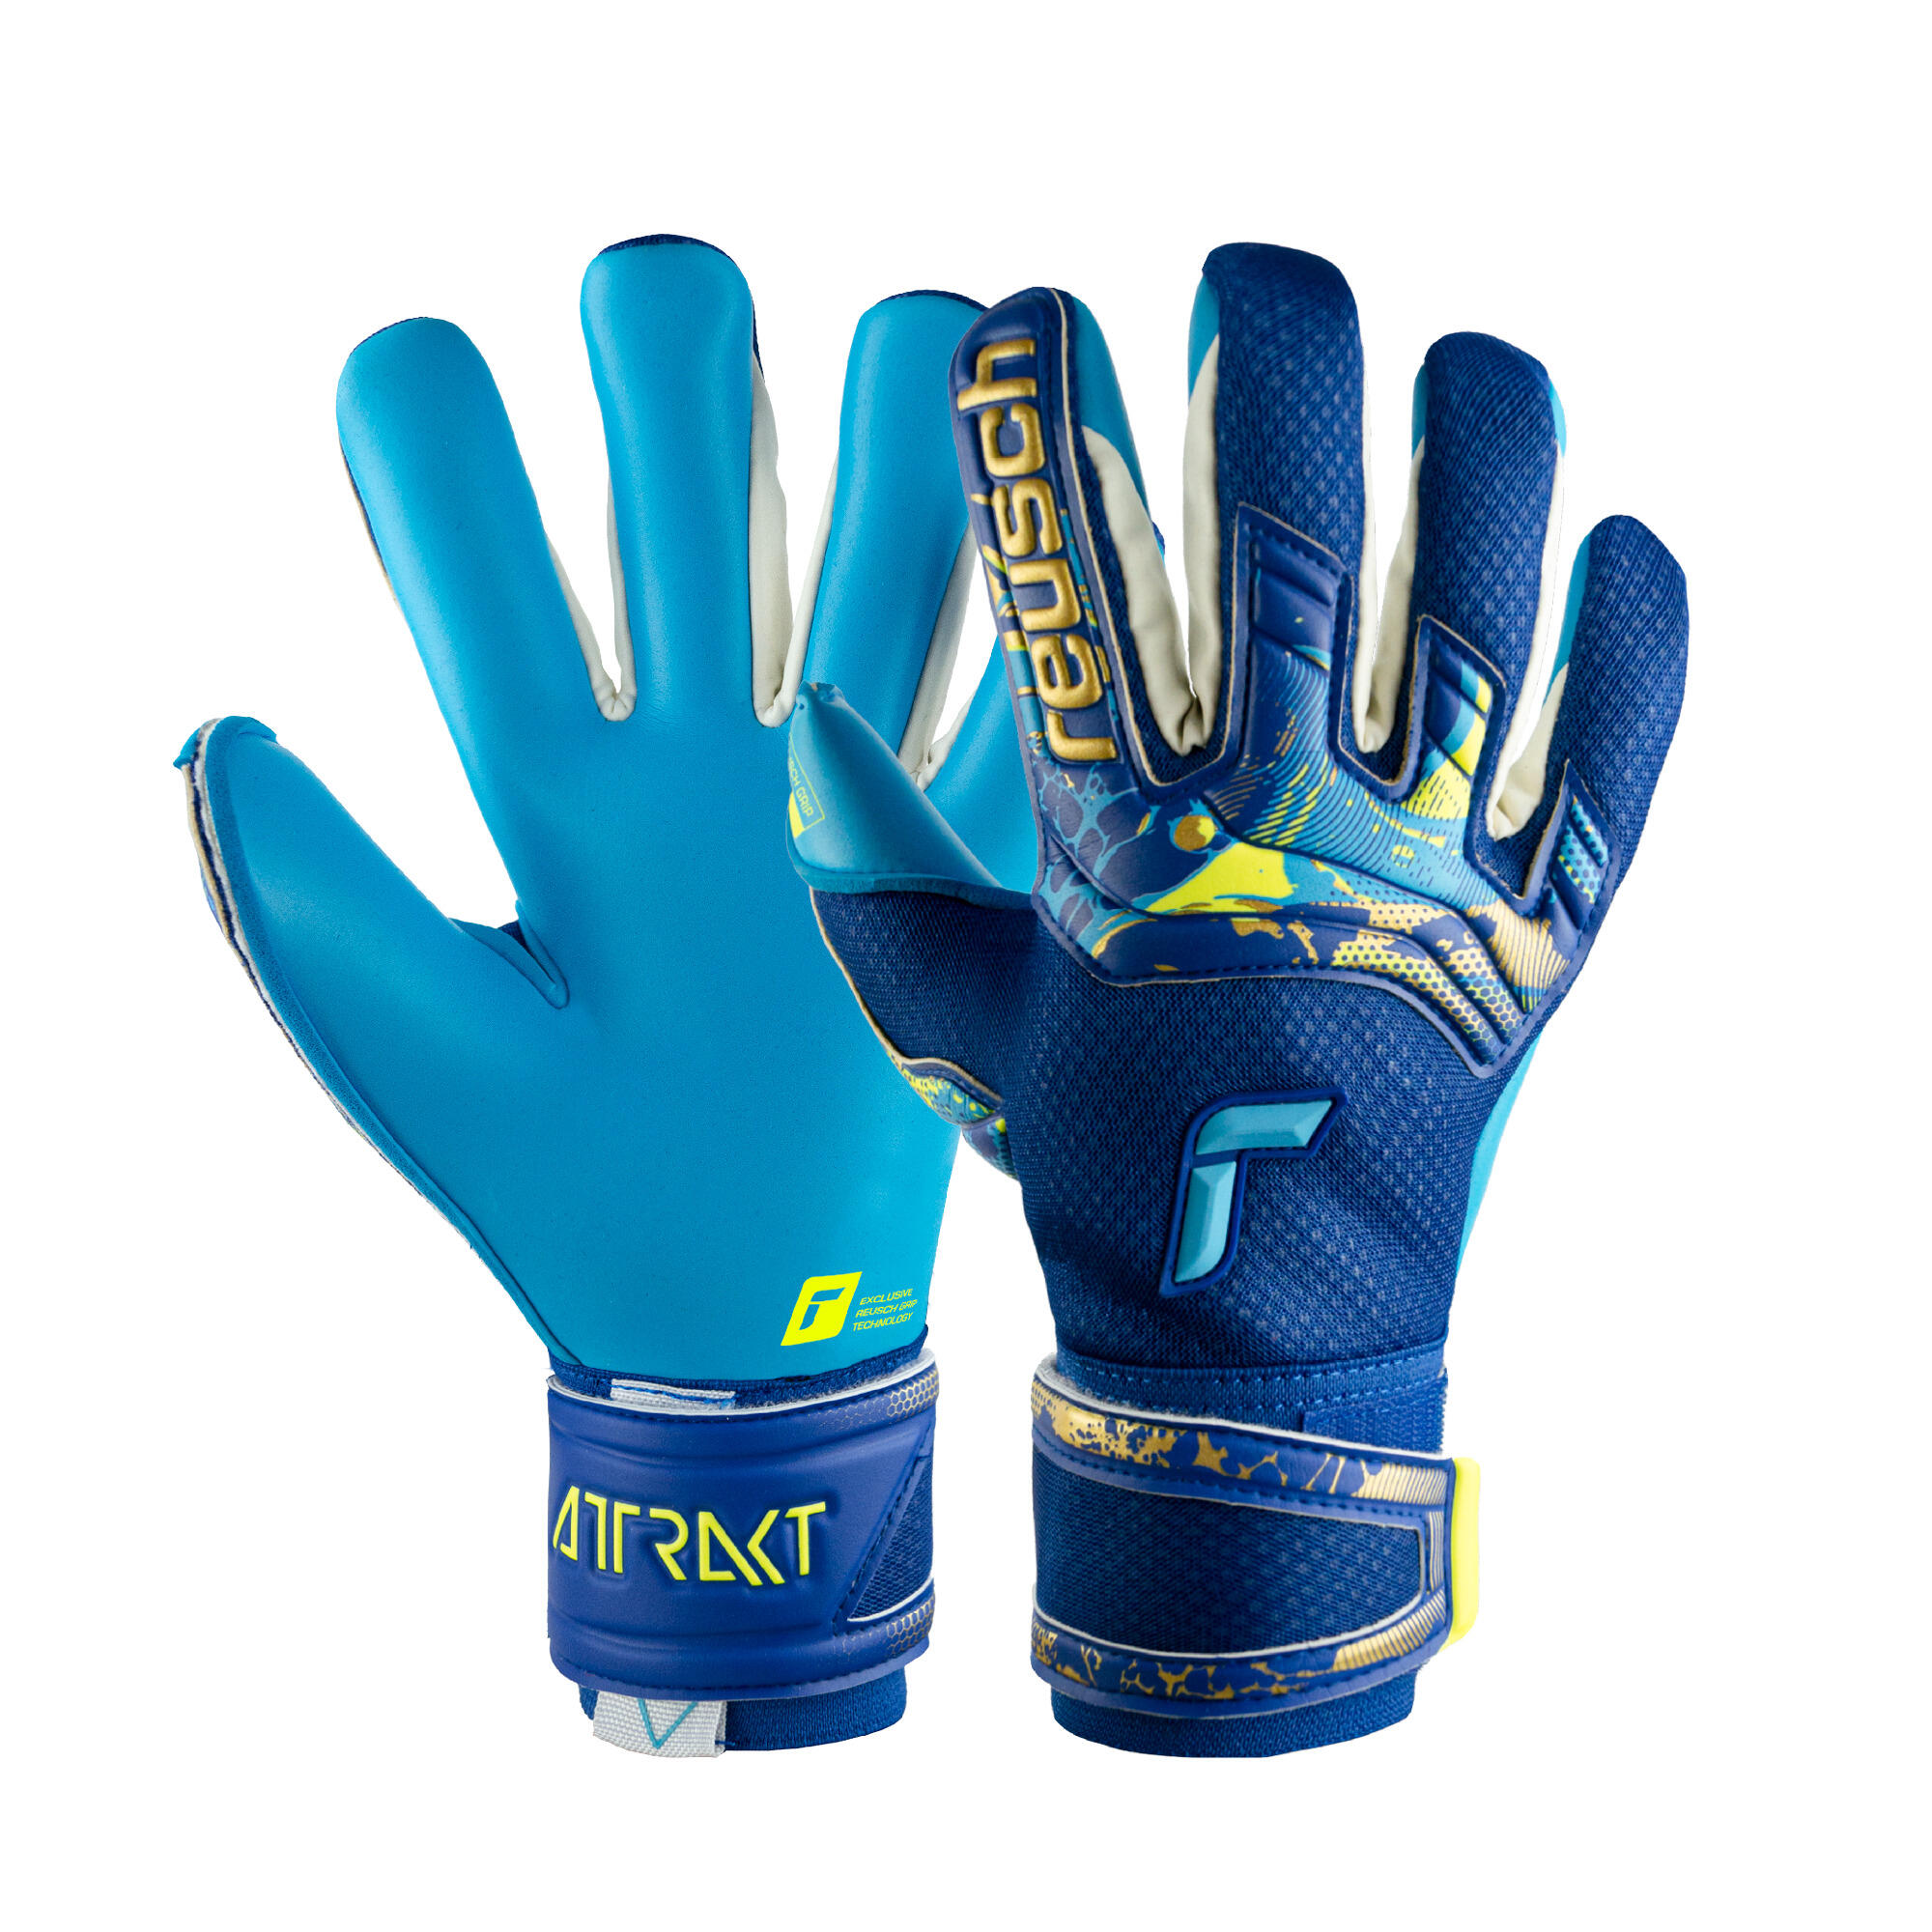 Reusch Attrakt Aqua  Goalkeeper Gloves 7/7